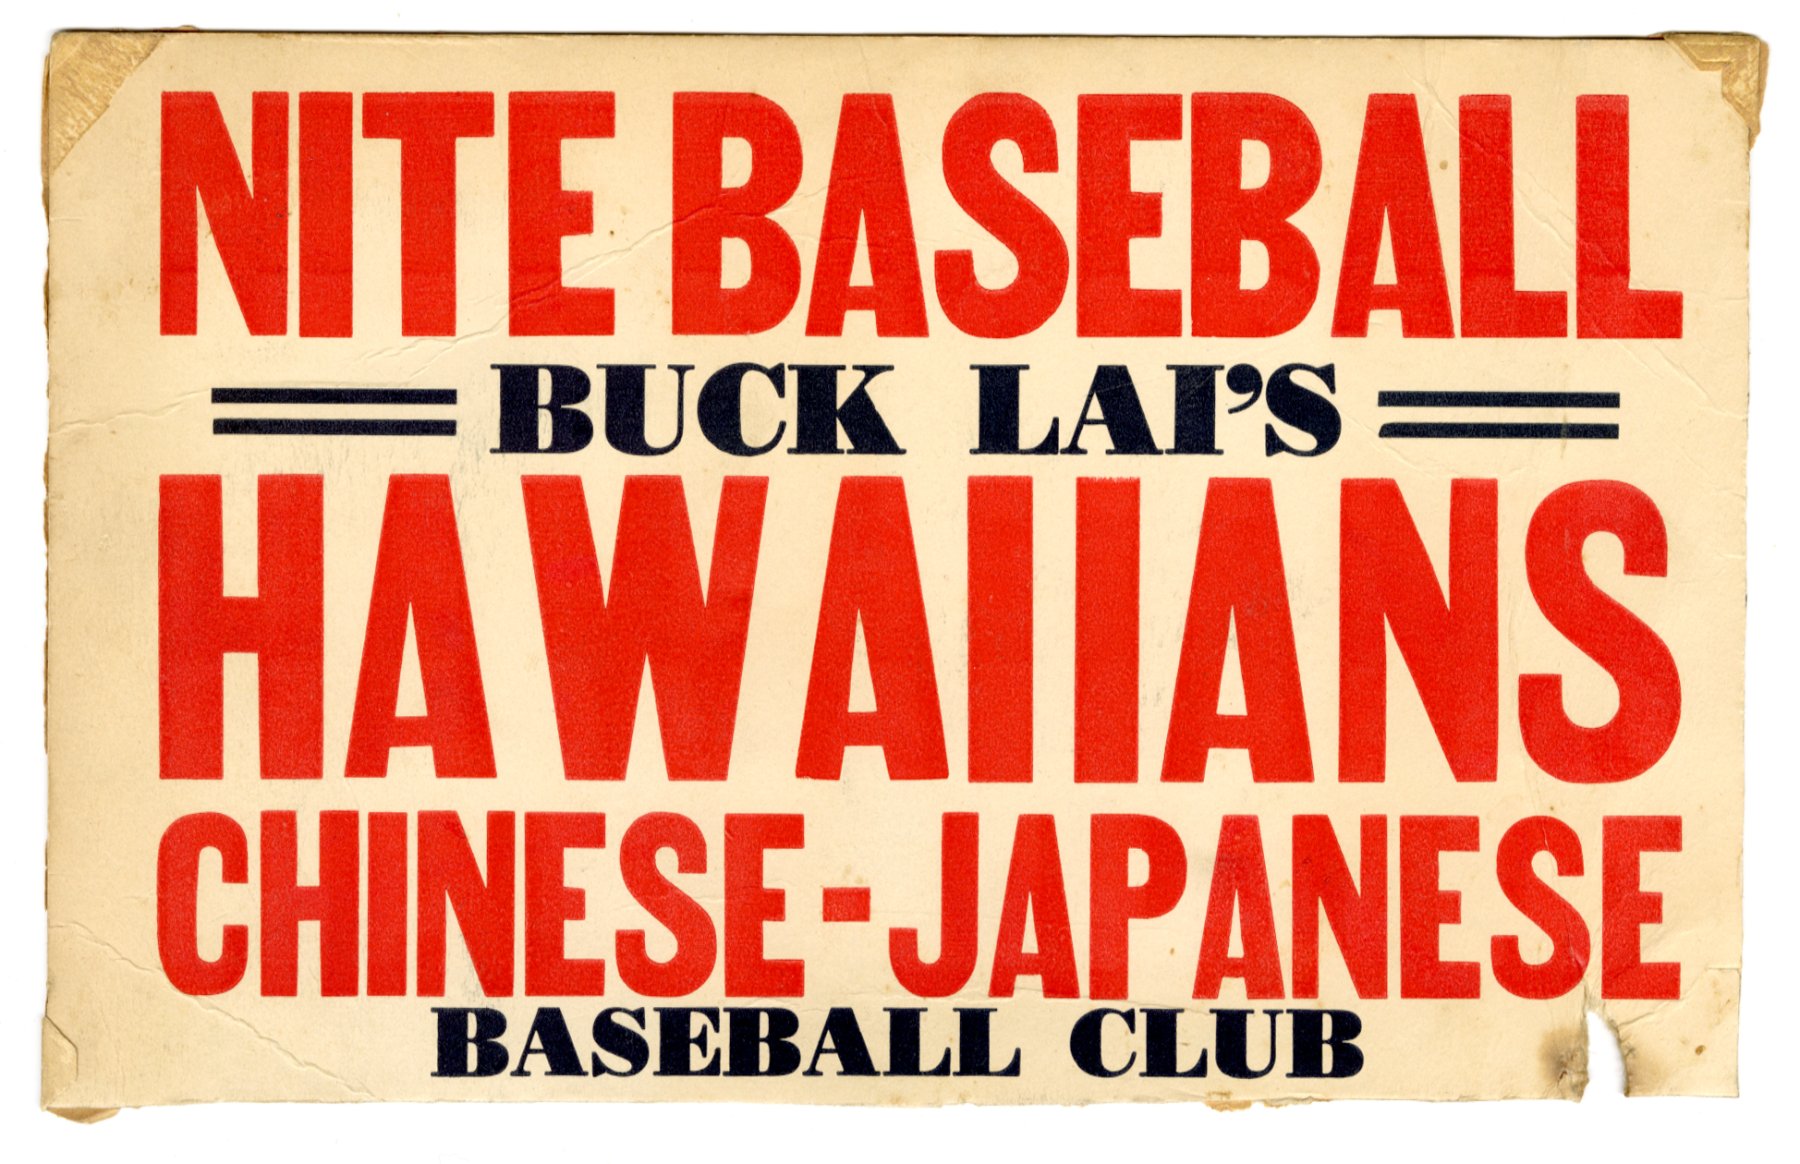 2020.012.001 
夜间棒球赛，Buck Lai 的夏威夷人中日棒球俱乐部。 由Roy Delbyck捐赠，美国华人博物馆（MOCA）馆藏。